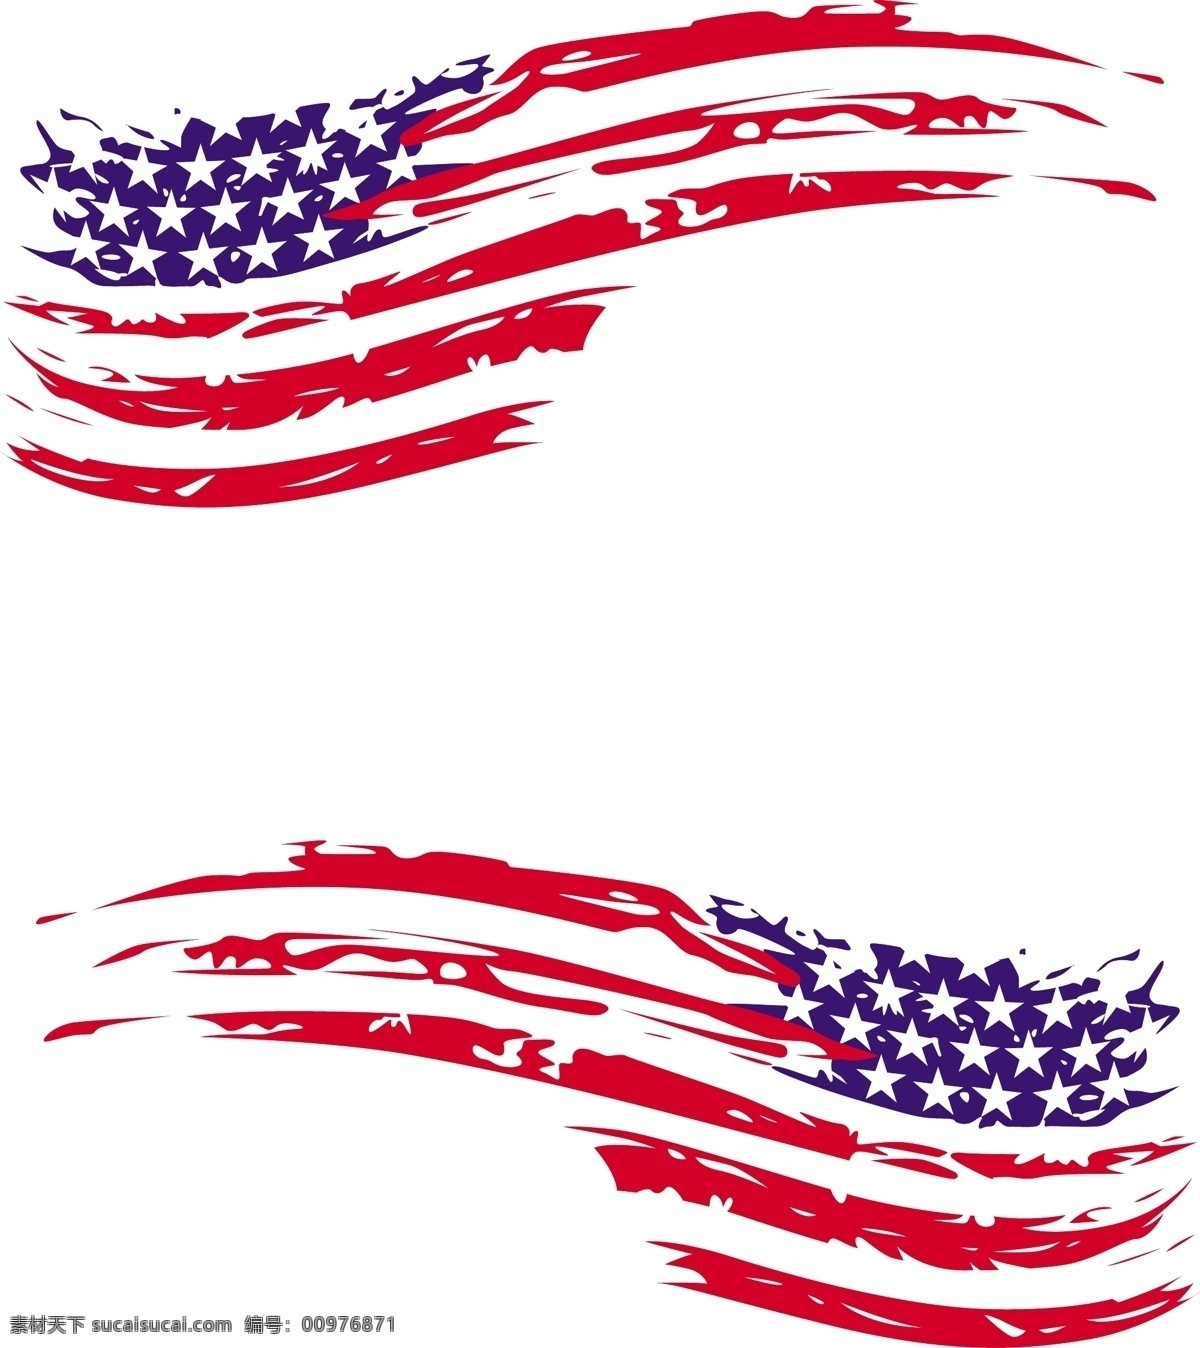 美国 国旗 矢量 车 贴 美国国旗 破旧国旗 红蓝旗子 飘着的国旗 国旗素材 矢量国旗